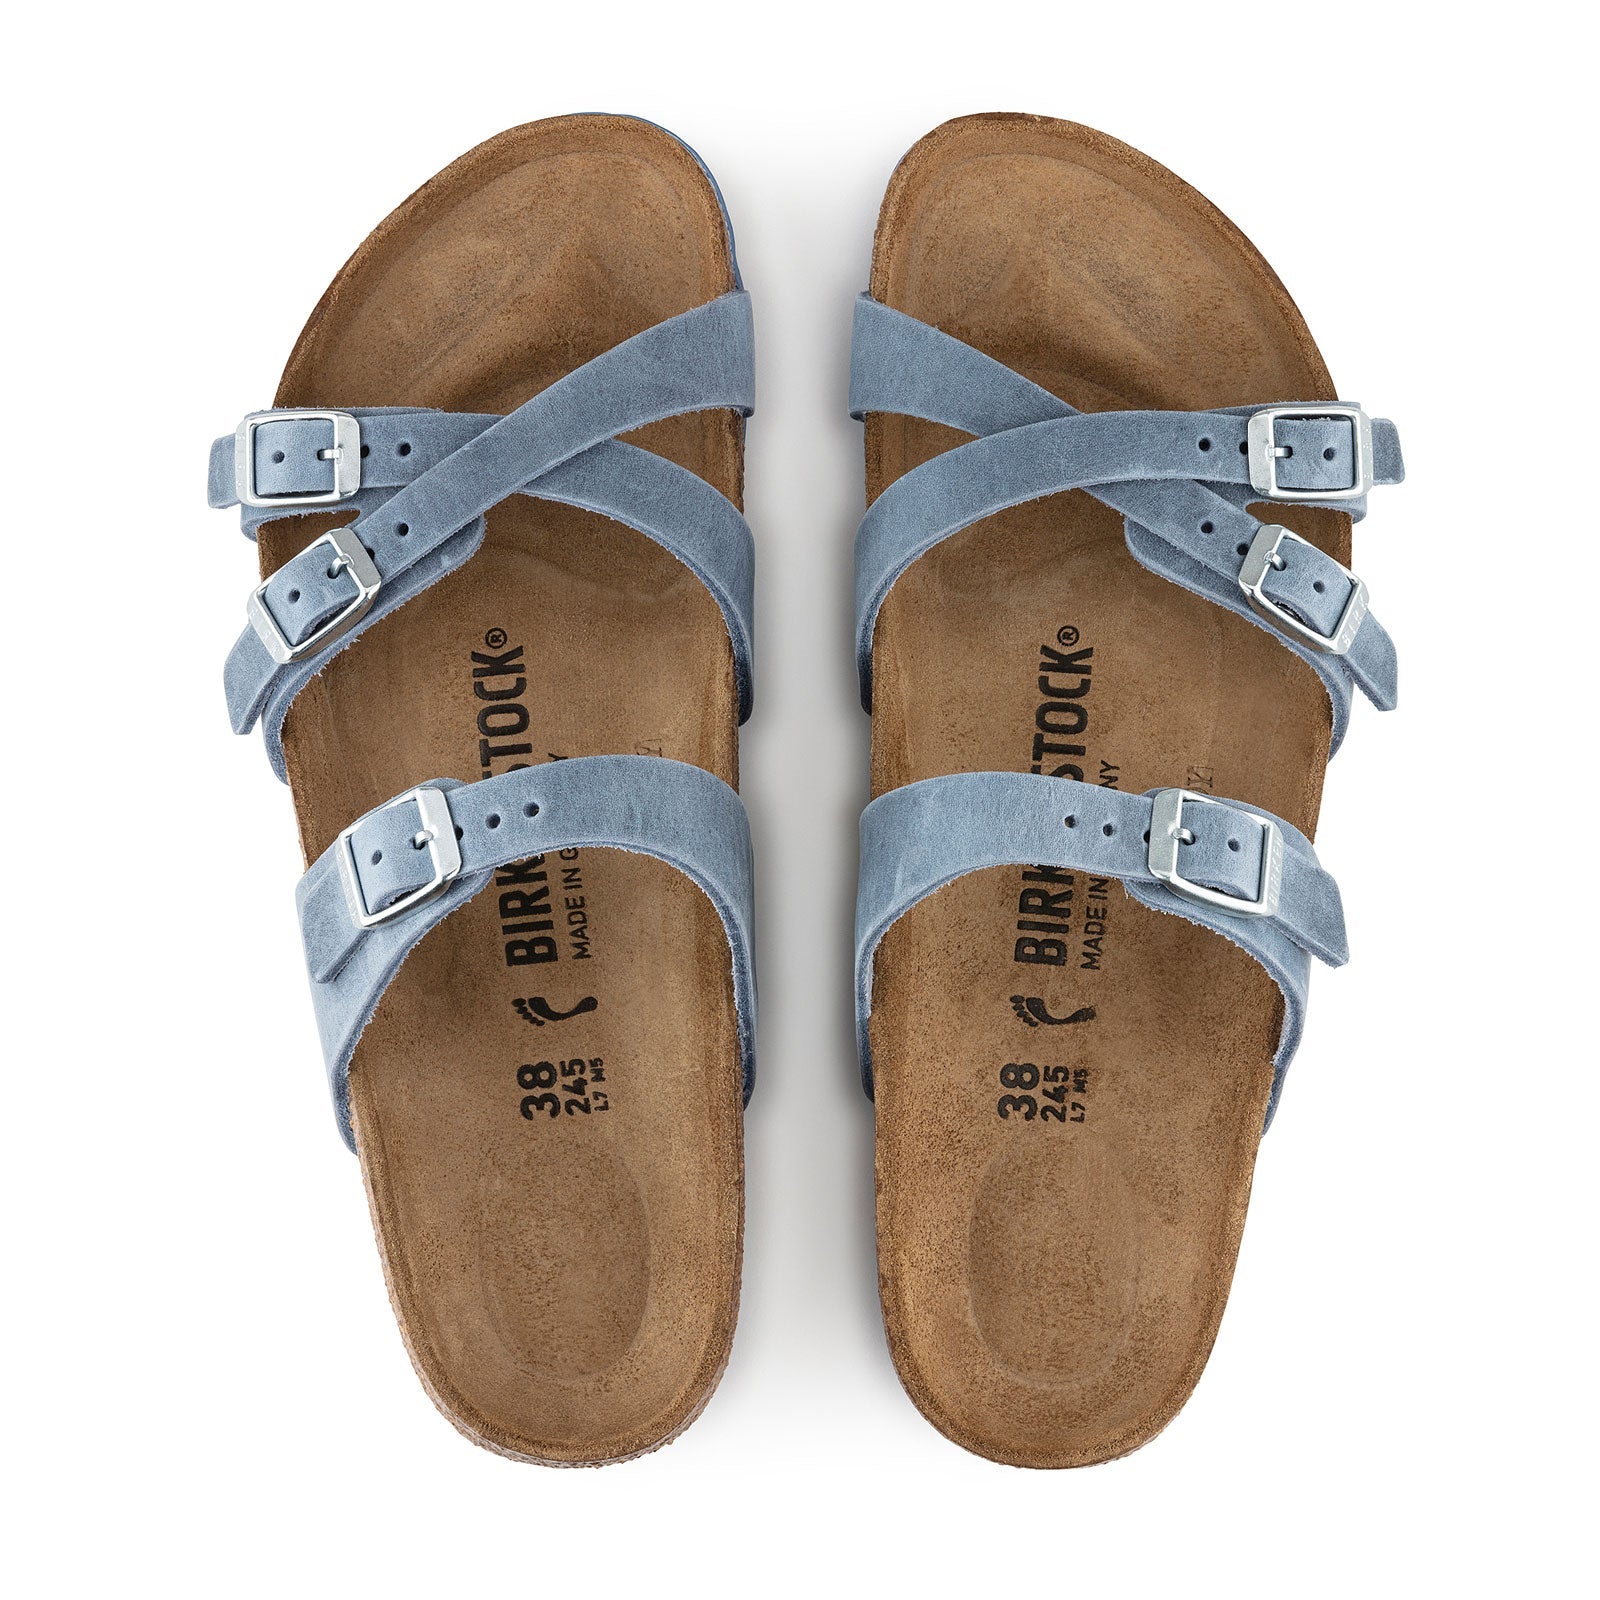 Birkenstock Franca Narrow Slide Sandal (Women) - Dusty Blue Oiled Leather Sandals - Slide - The Heel Shoe Fitters